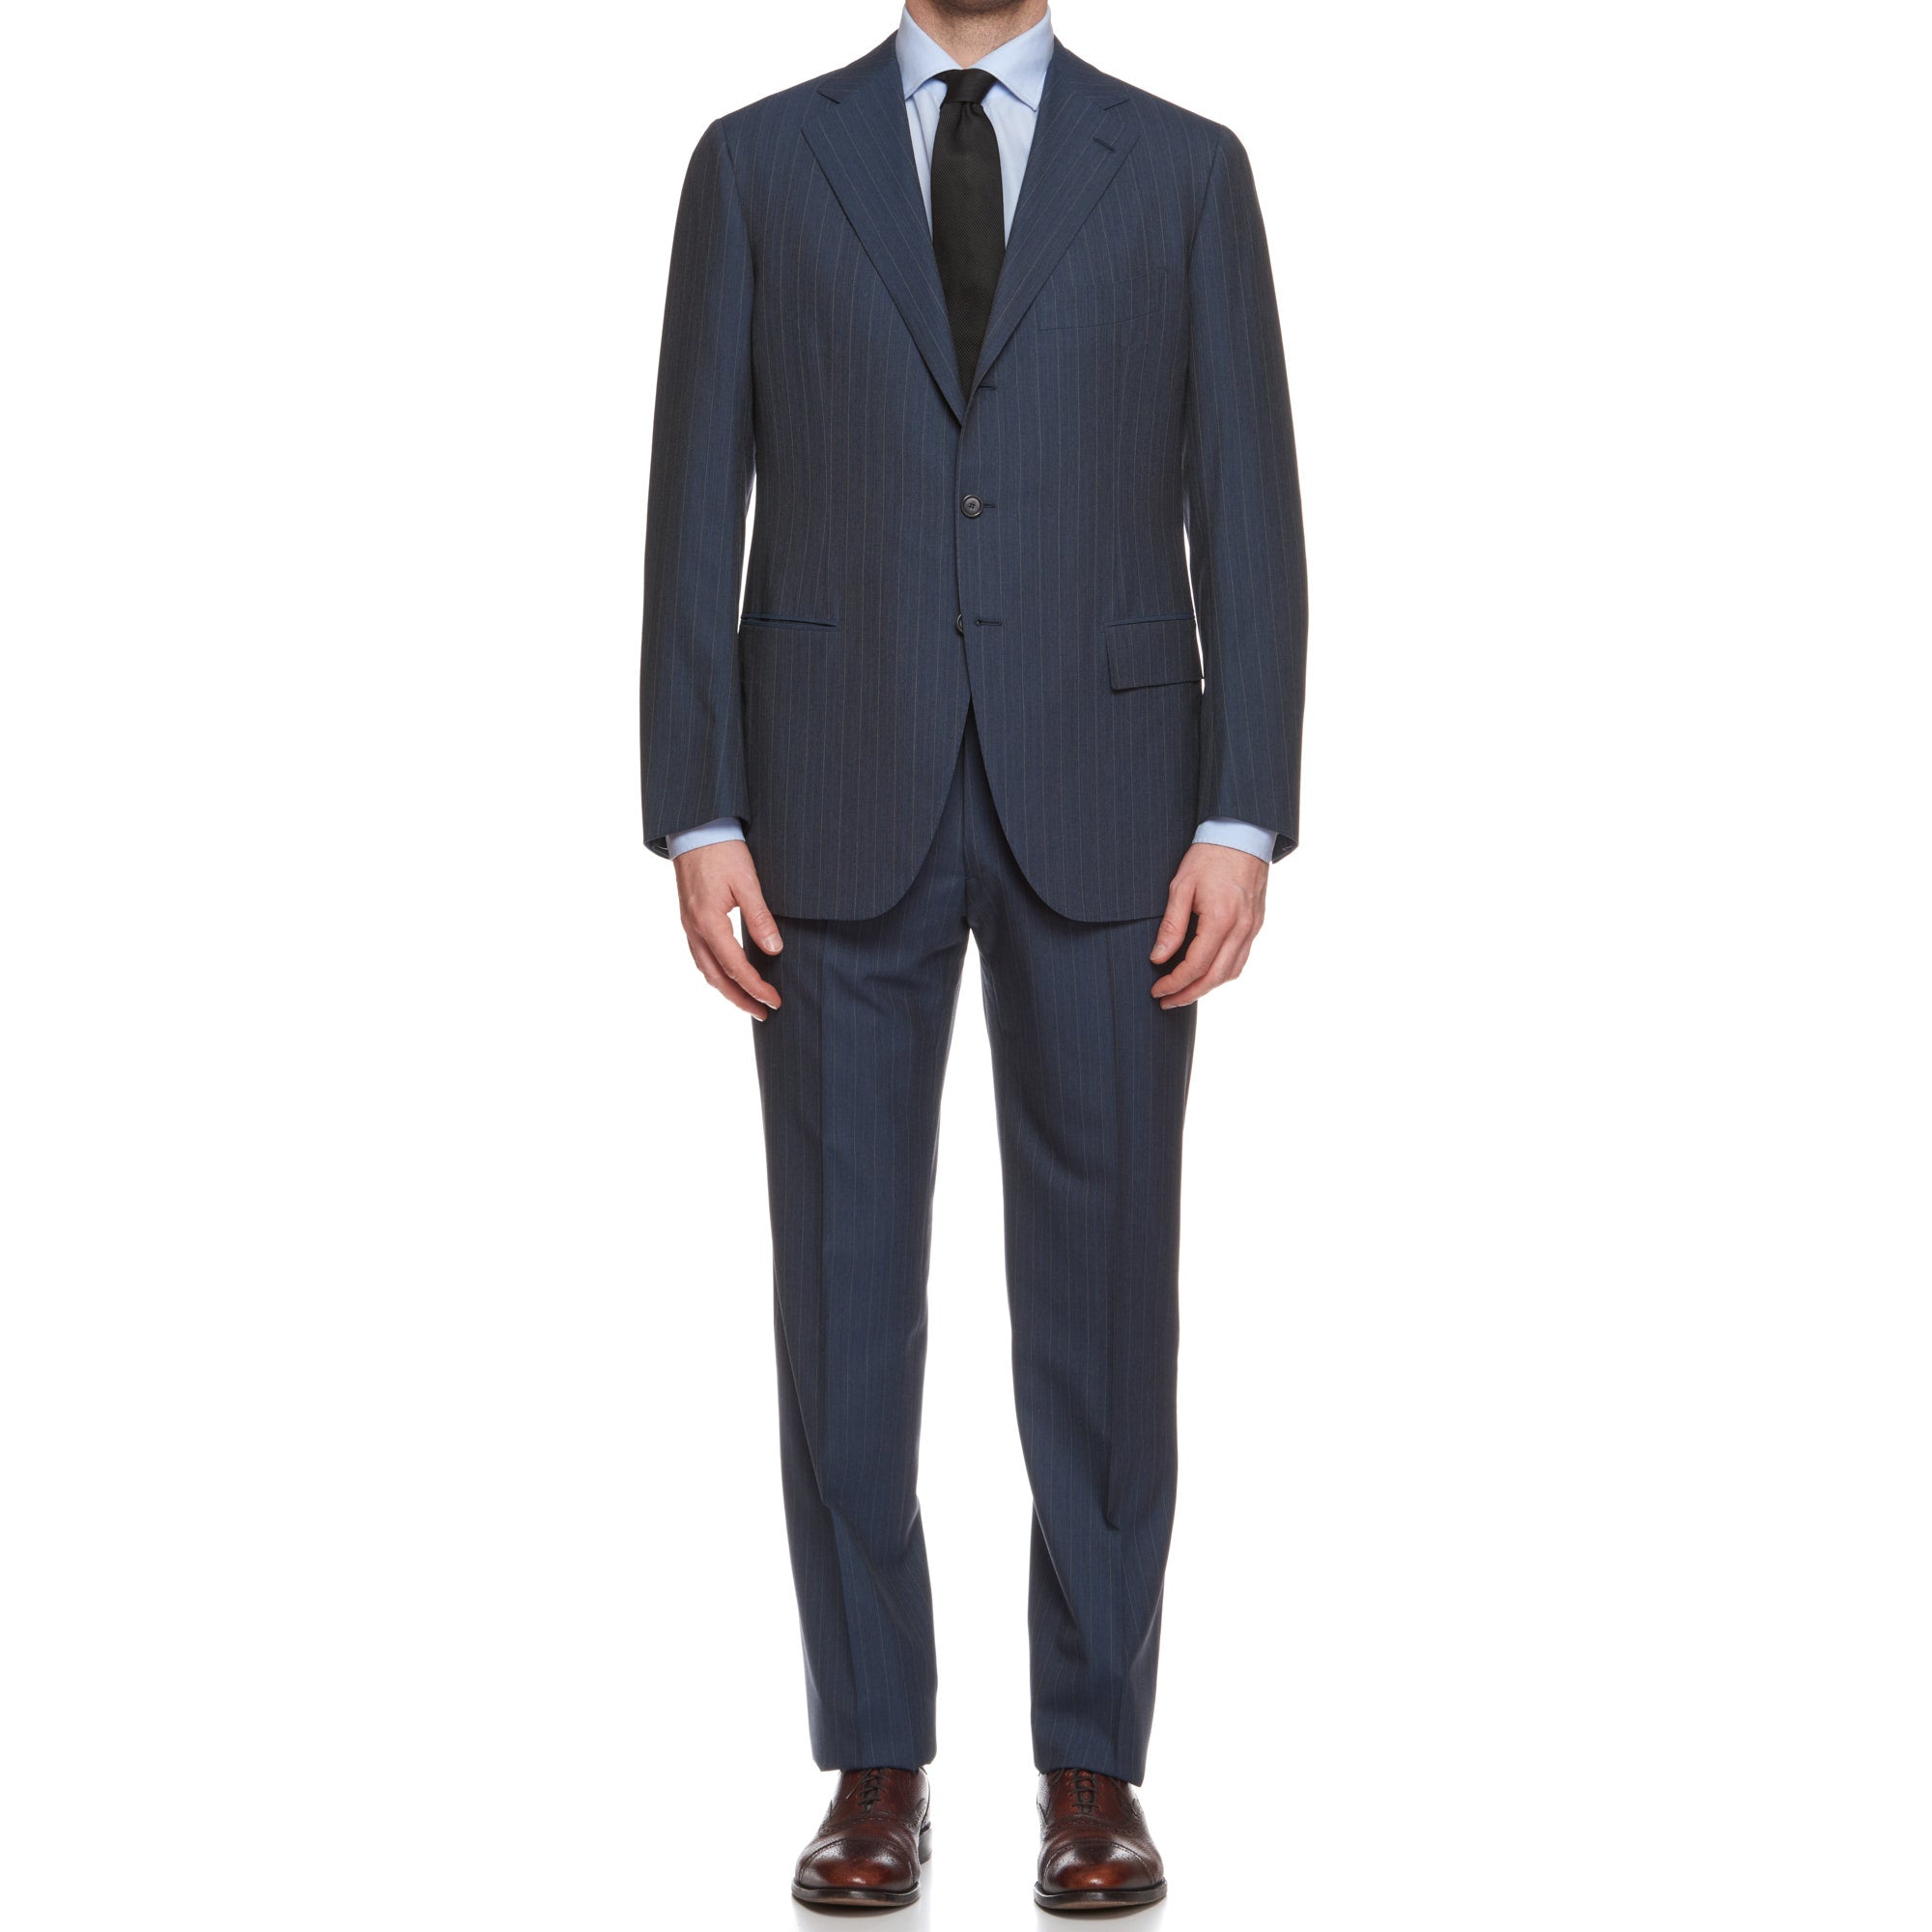 CESARE ATTOLINI Napoli Handmade Blue Striped Wool Super 120's Suit 52 NEW US 42 CESARE ATTOLINI